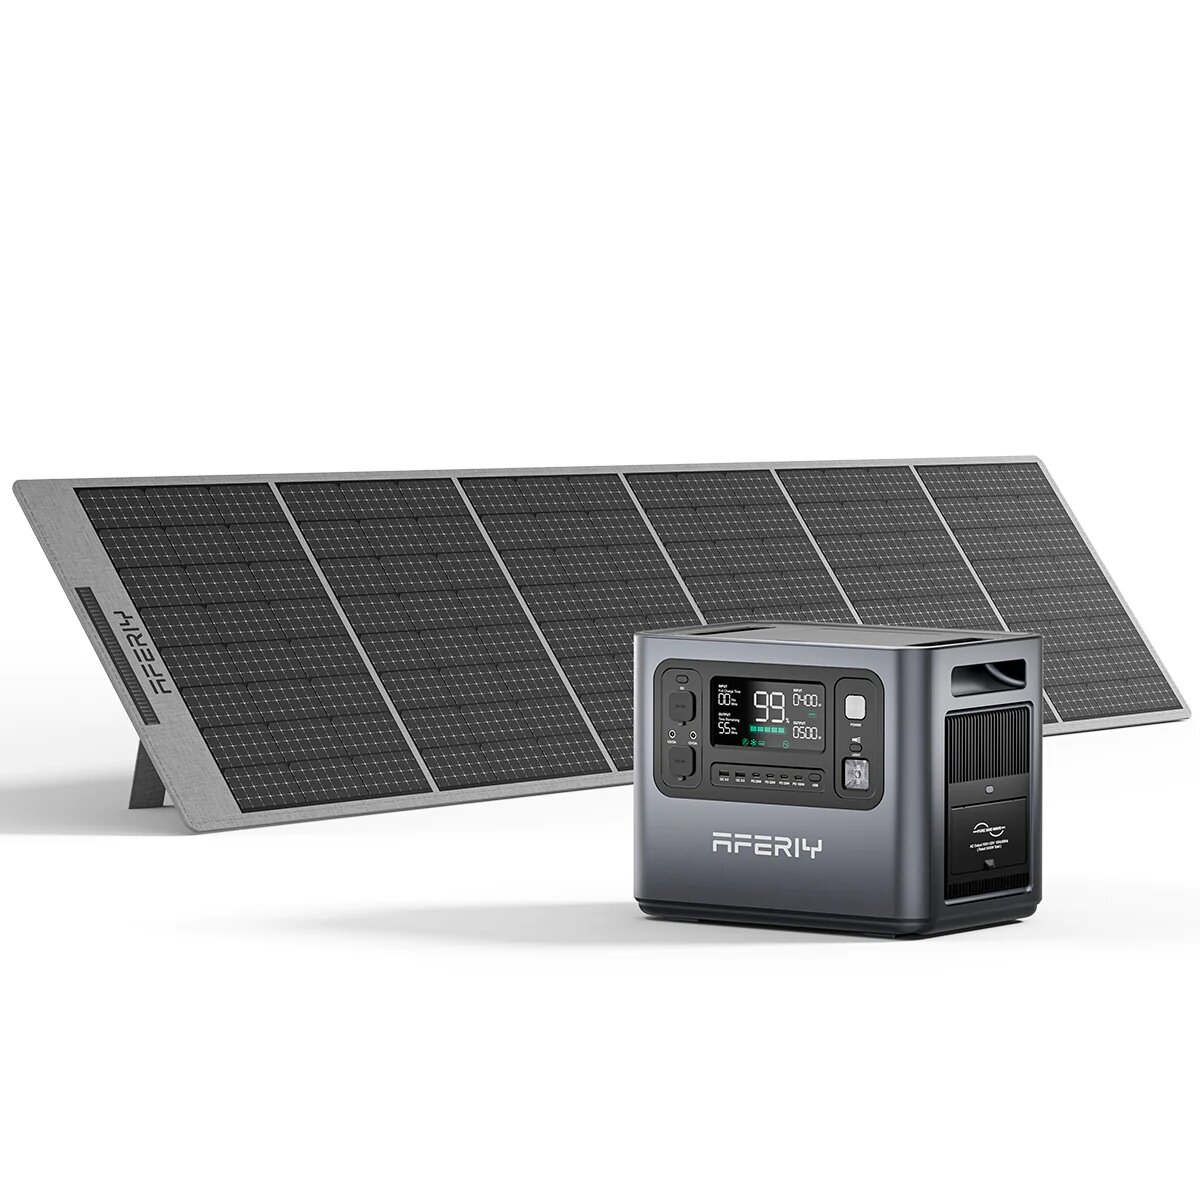 [Αμερική Κατευθείαν] Αφερίι P210 2400W 2048Wh Φορητός σταθμός ενέργειας +1 * Ηλιακό πάνελ S400 400W, Γεννήτρια ηλιακής ενέργειας LiFePO4 UPS Καθαρή ημιτονική καμπίνα Τροχόσπιτο καλύψεων οικίας Έκτακτης ανάγκης Φορητή δεξαμενή εφεδρικής ενέργειας